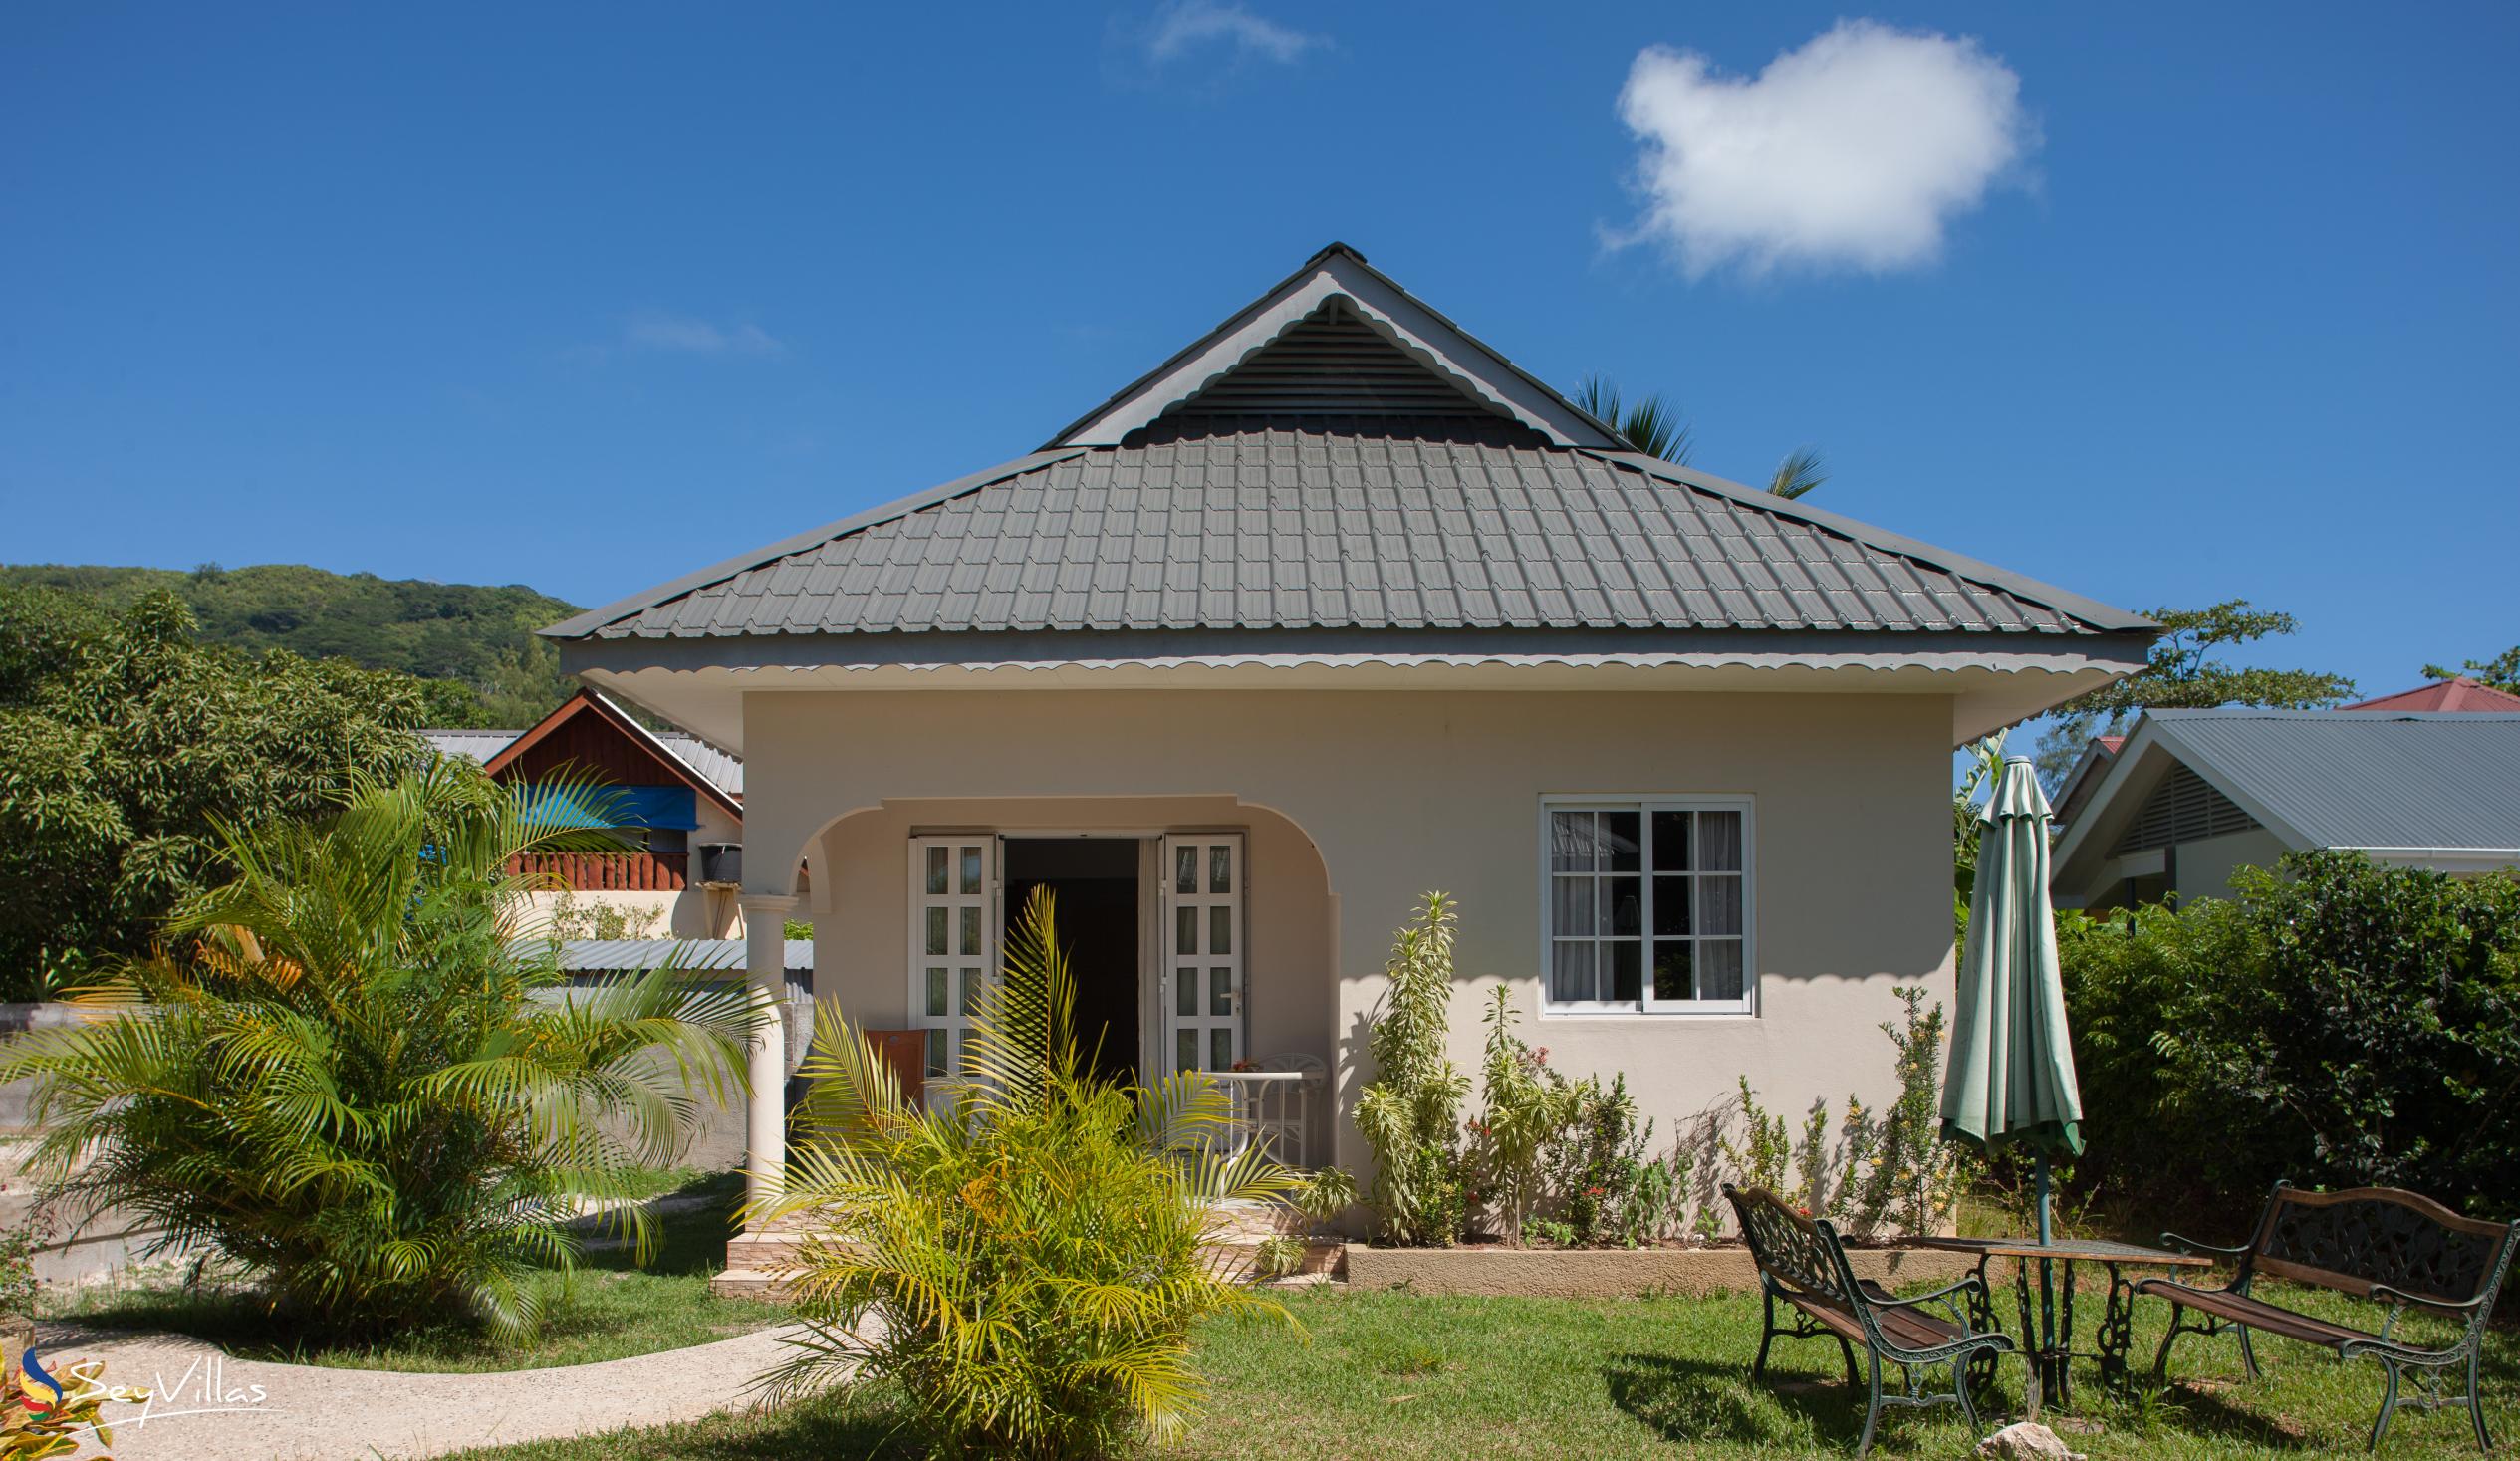 Foto 2: Villa Source D'Argent - Esterno - La Digue (Seychelles)